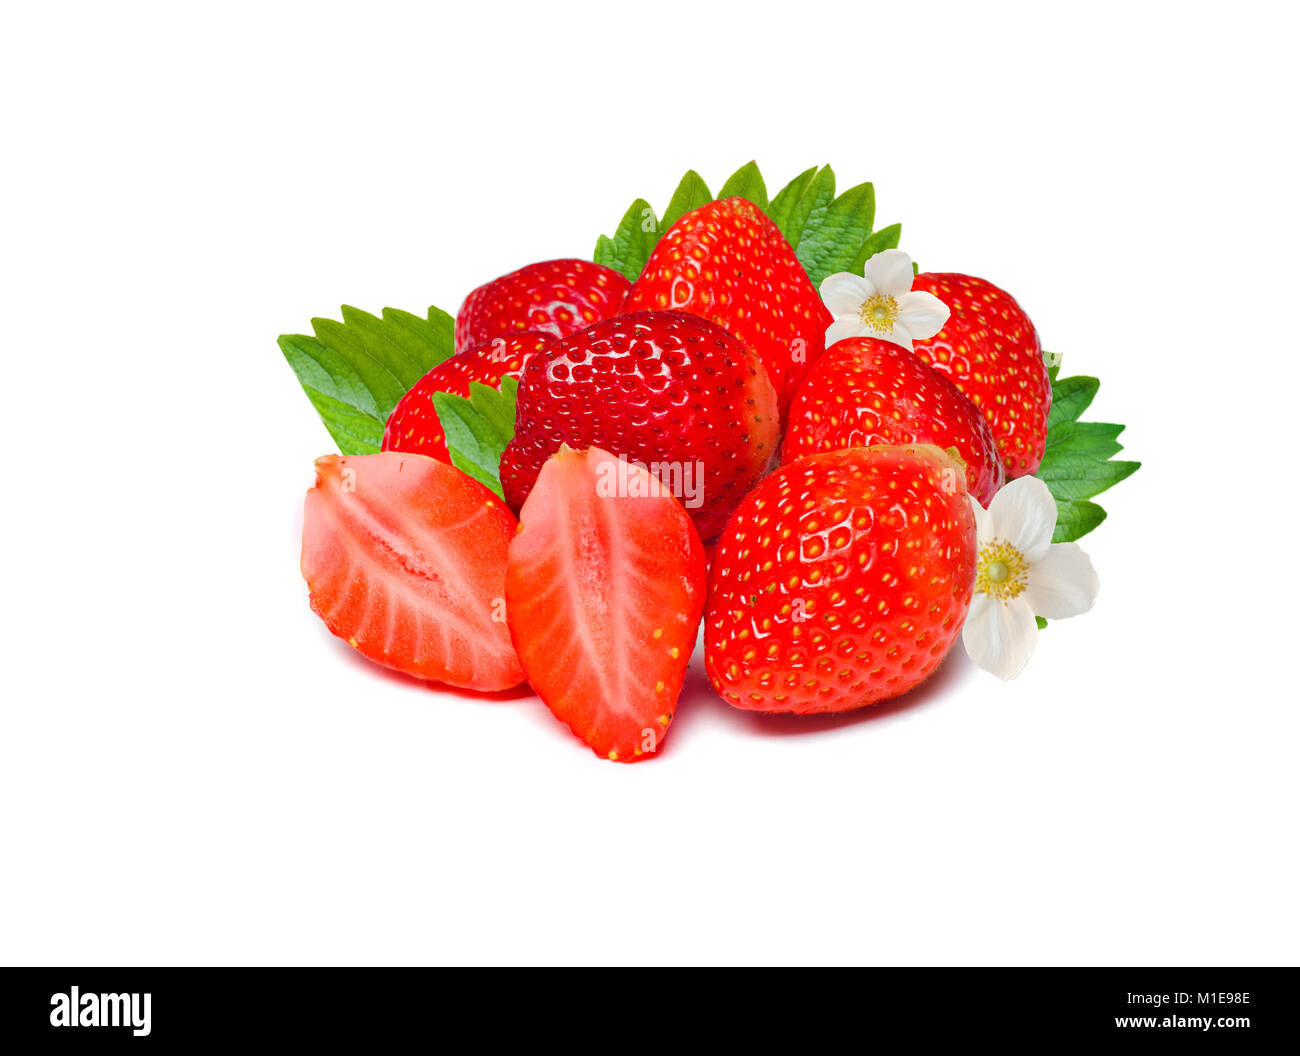 Fruta roja madura de fresas frescas con hojas. Aislado sobre un fondo blanco. Foto de stock